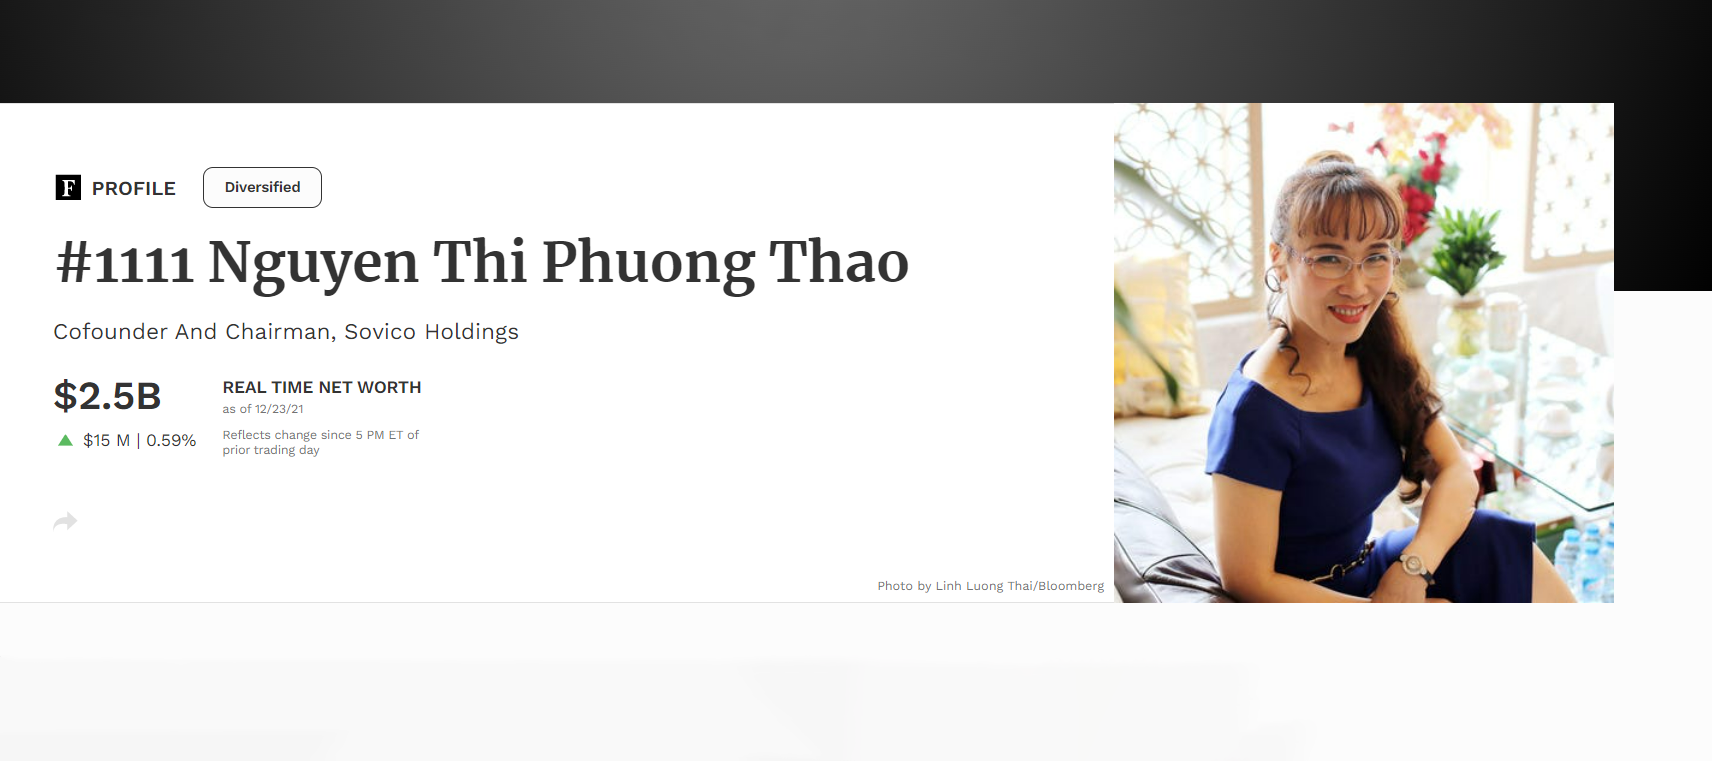 Đứng thứ 4 trong danh sách là bà Nguyễn Thị Phương Thảo - Tổng giám đốc hãng hàng không Vietjet Air với giá trị tài sản 2,5 tỉ USD.